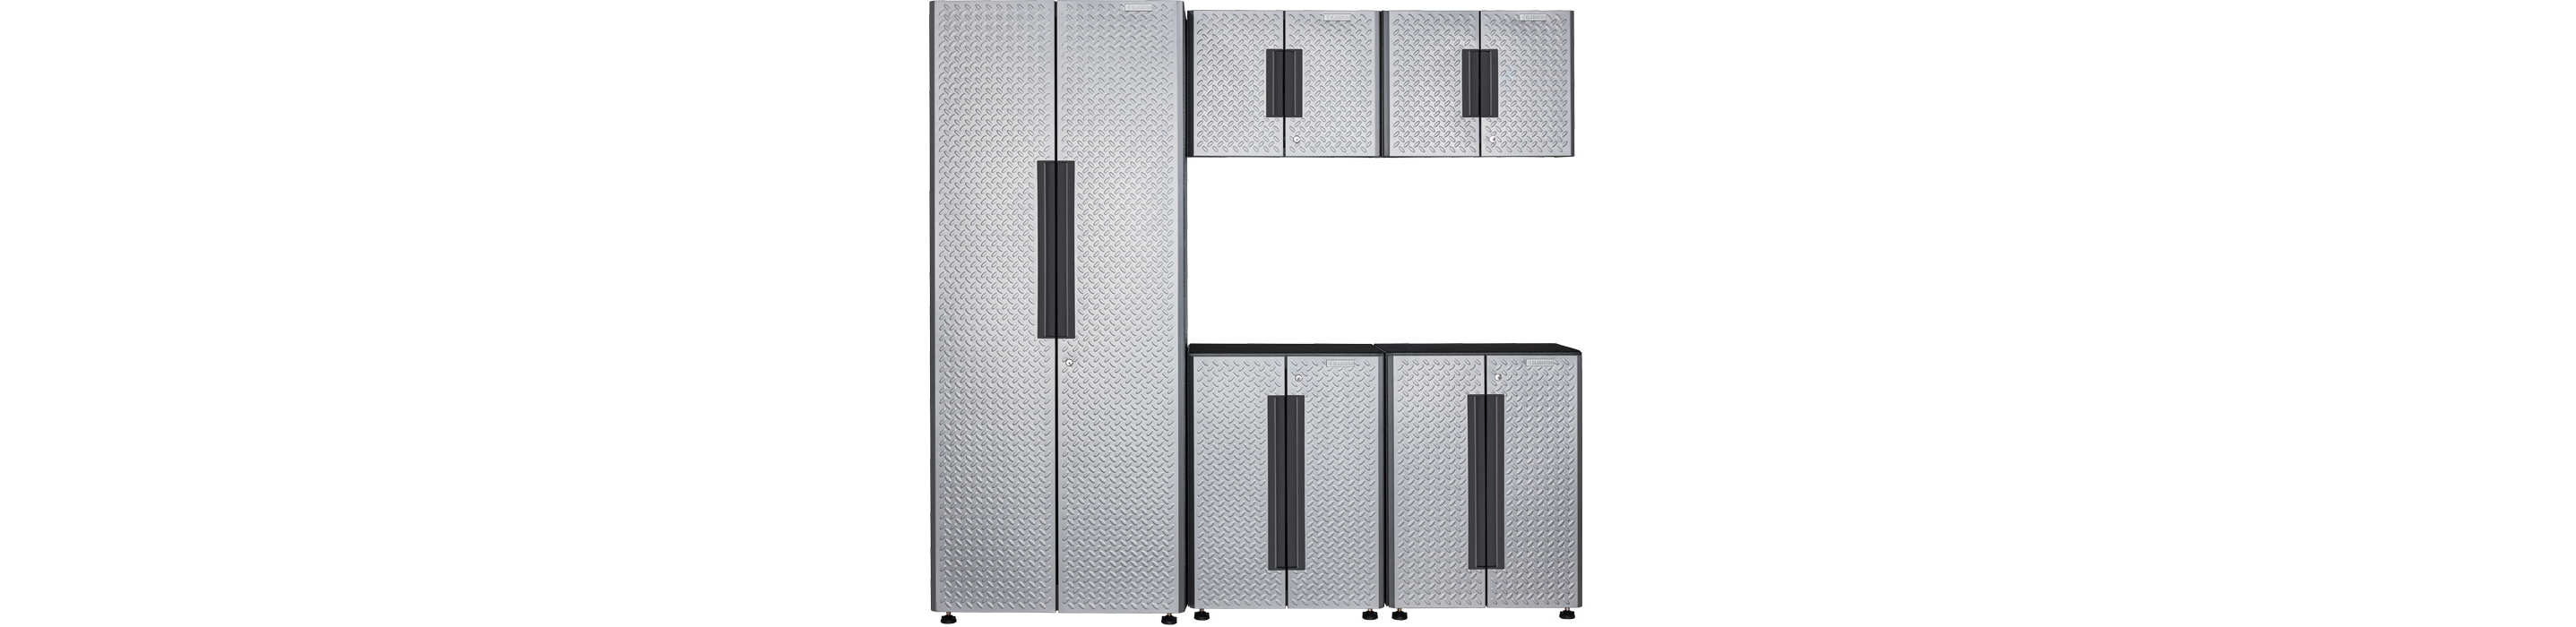 Un système d'armoires Gladiator Flex avec quatre armoires, dont deux armoires inférieures